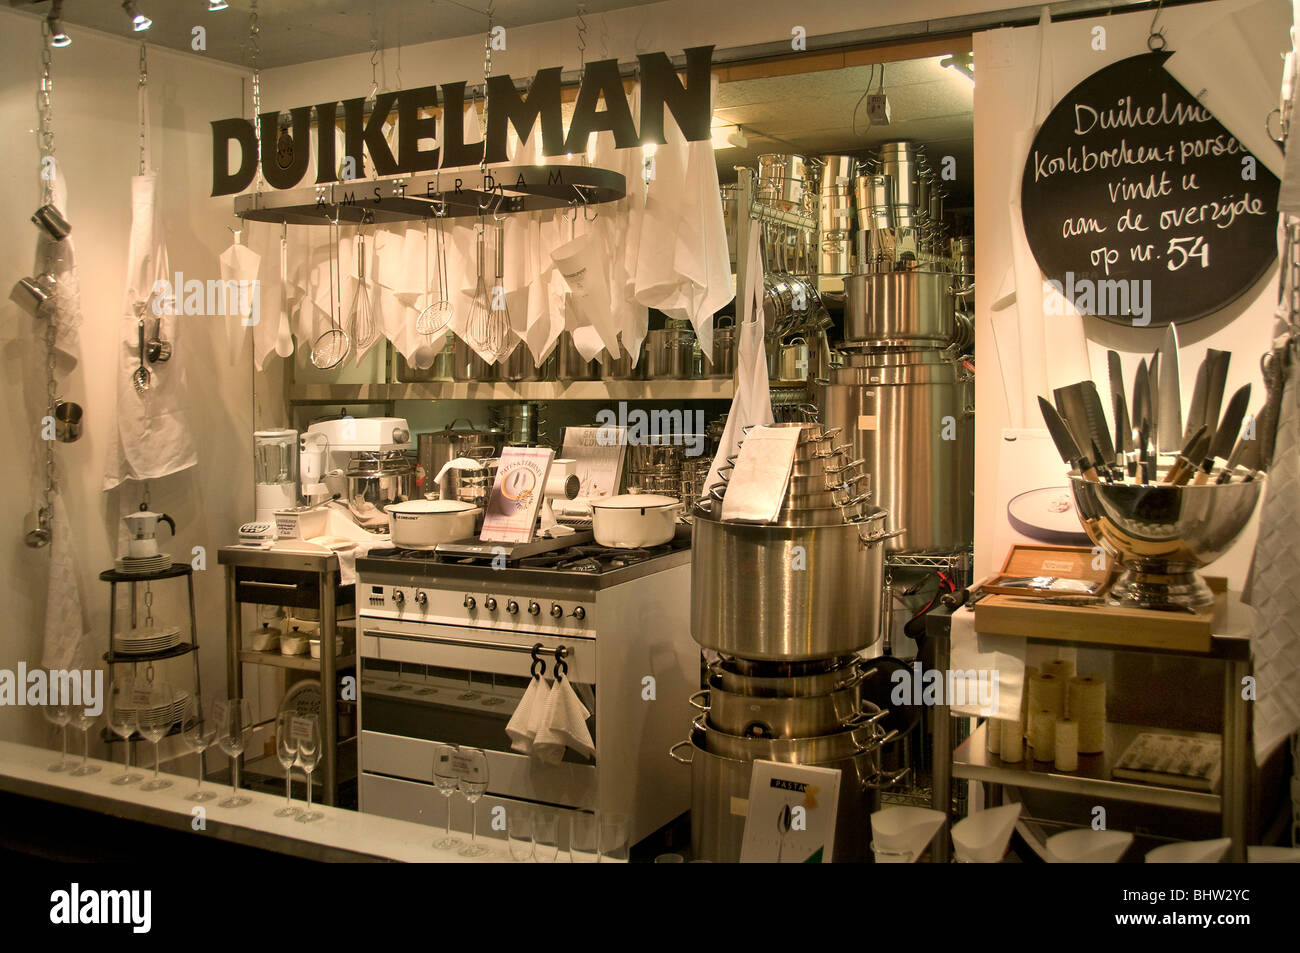 Duikelman Amsterdam Geschirr Küche Kitchener Stockfoto